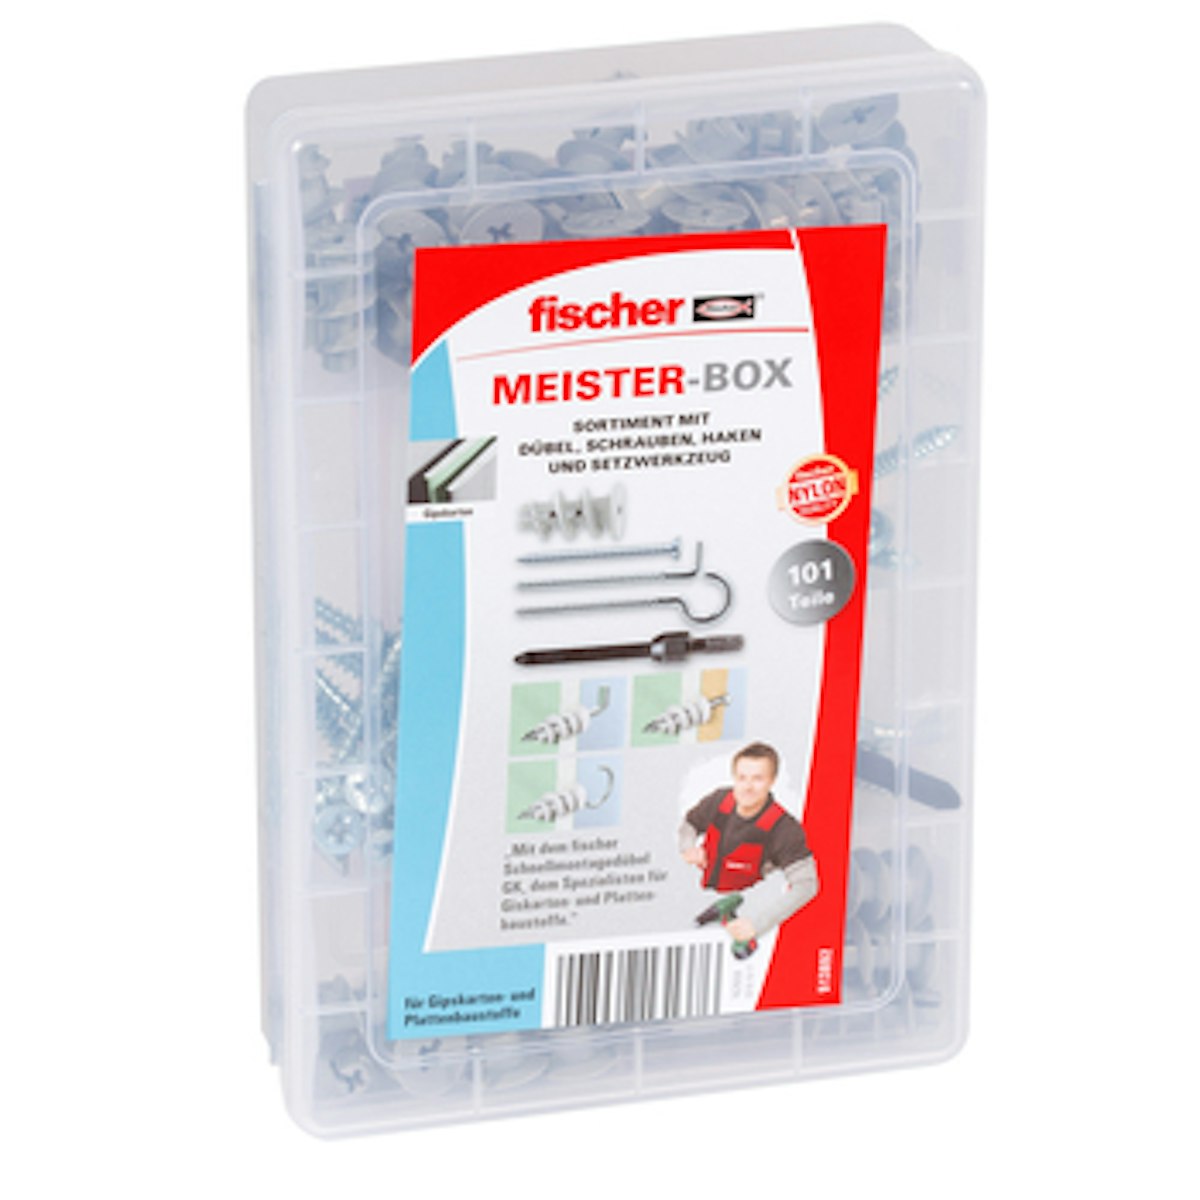 FISCHER Meister-Box GK+Schraube+Haken von fischerwerke GmbH & Co. KG